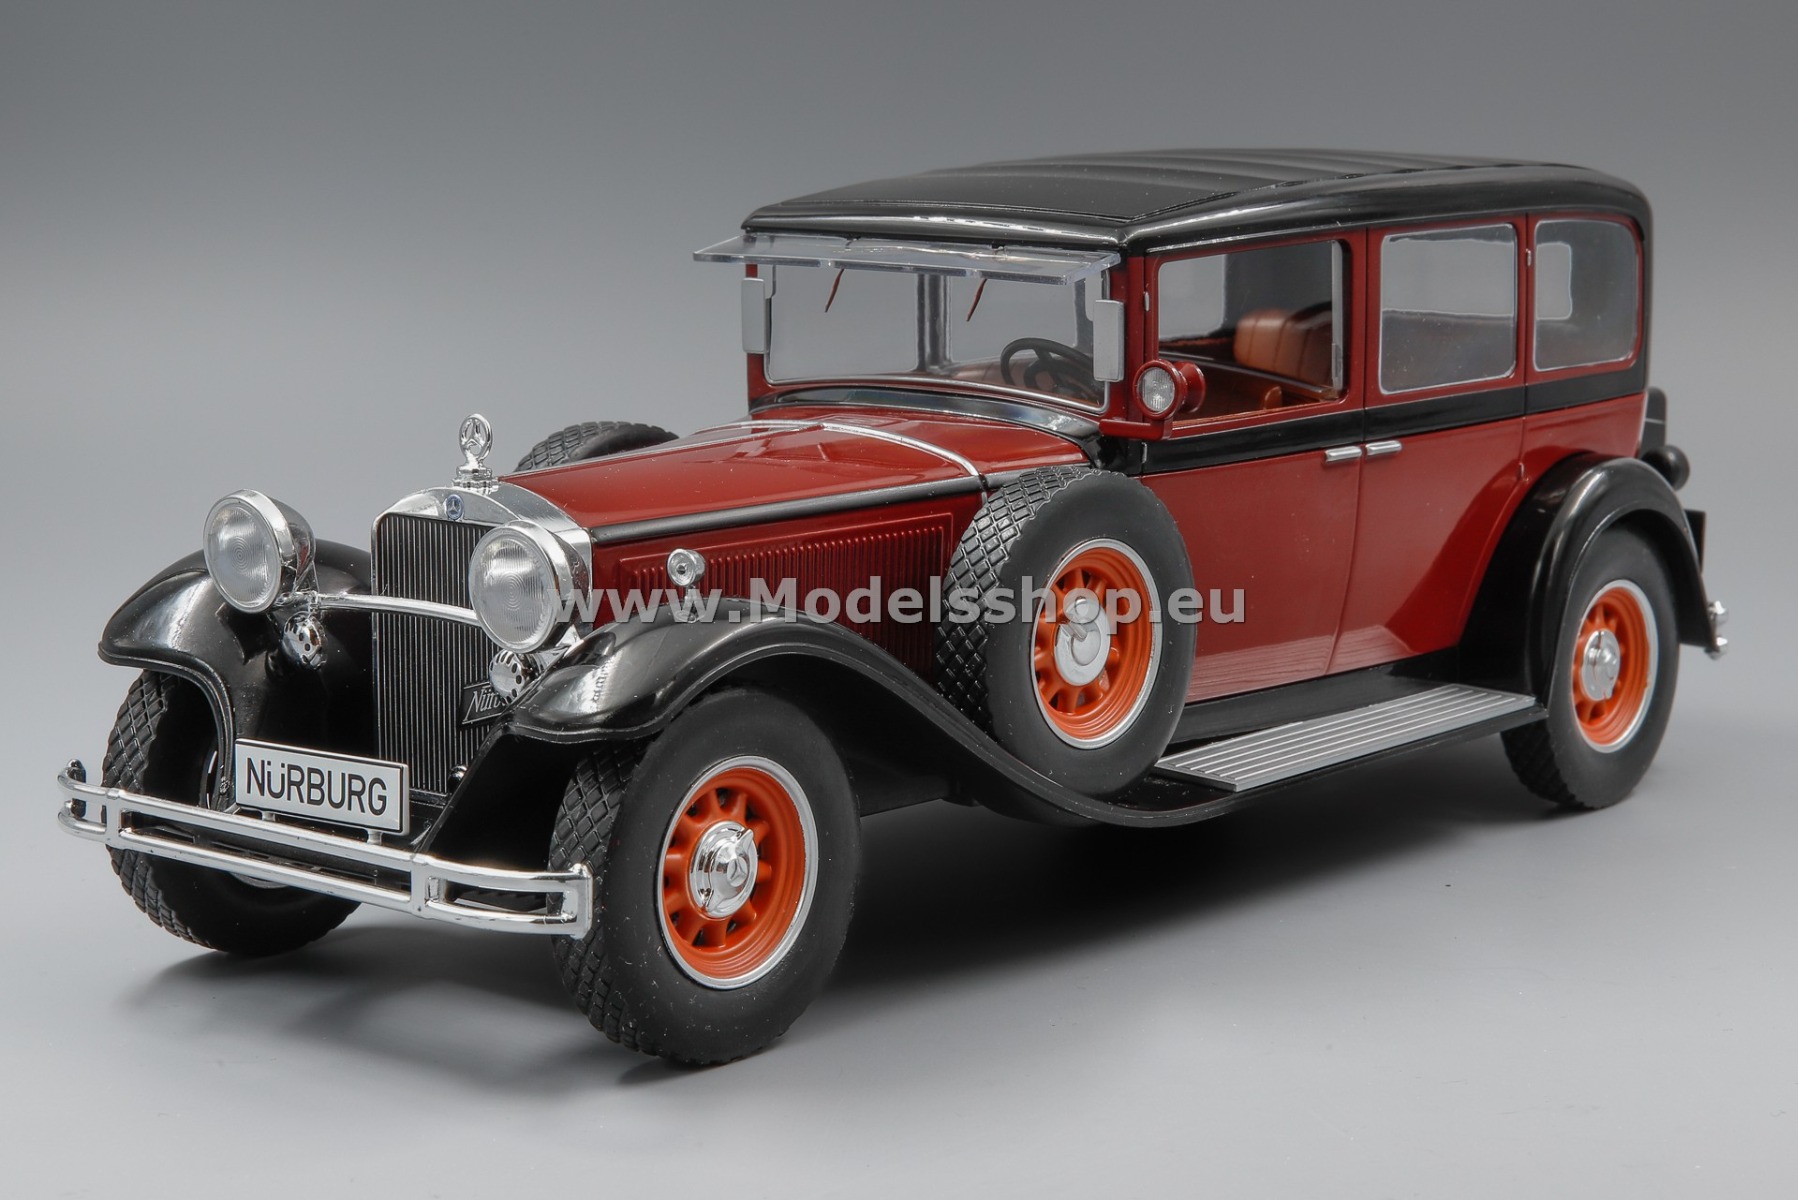 MCG 18364 Mercedes-Benz typ Nürburg 460/460 K (W08), 1928 /Dark red - black/